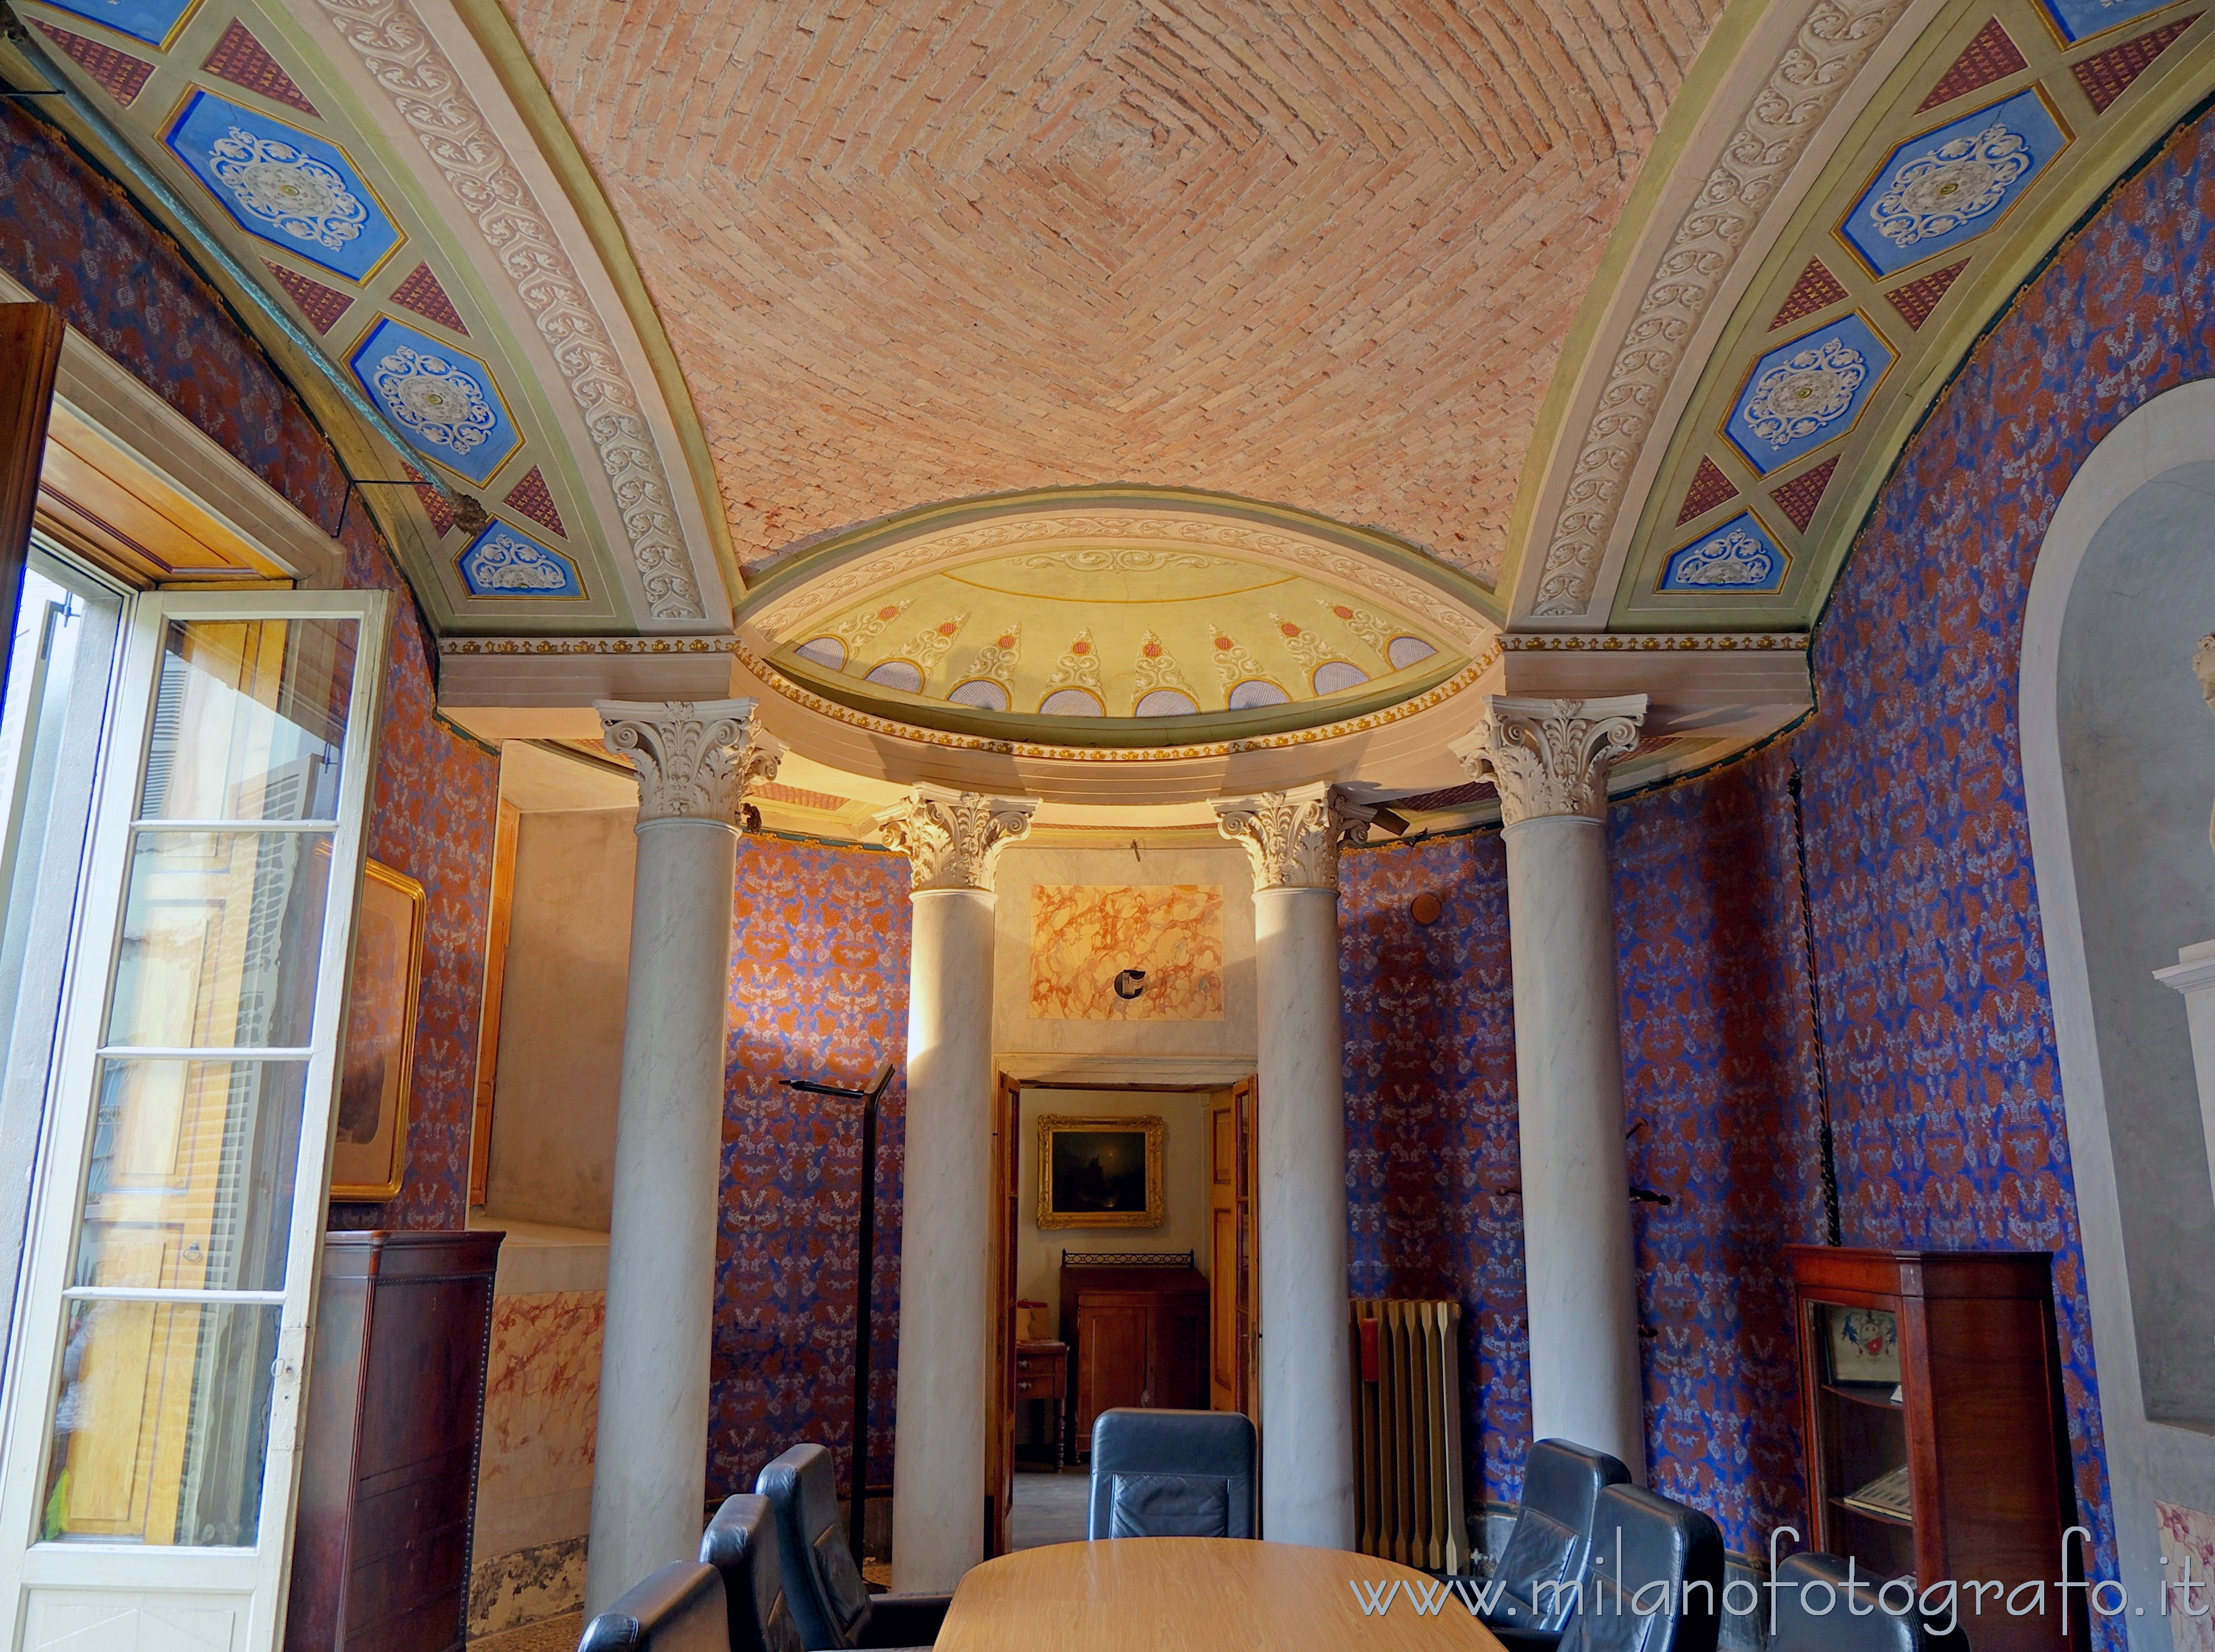 Romano di Lombardia (Bergamo, Italy): Oval Room in Palace Rubini - Romano di Lombardia (Bergamo, Italy)